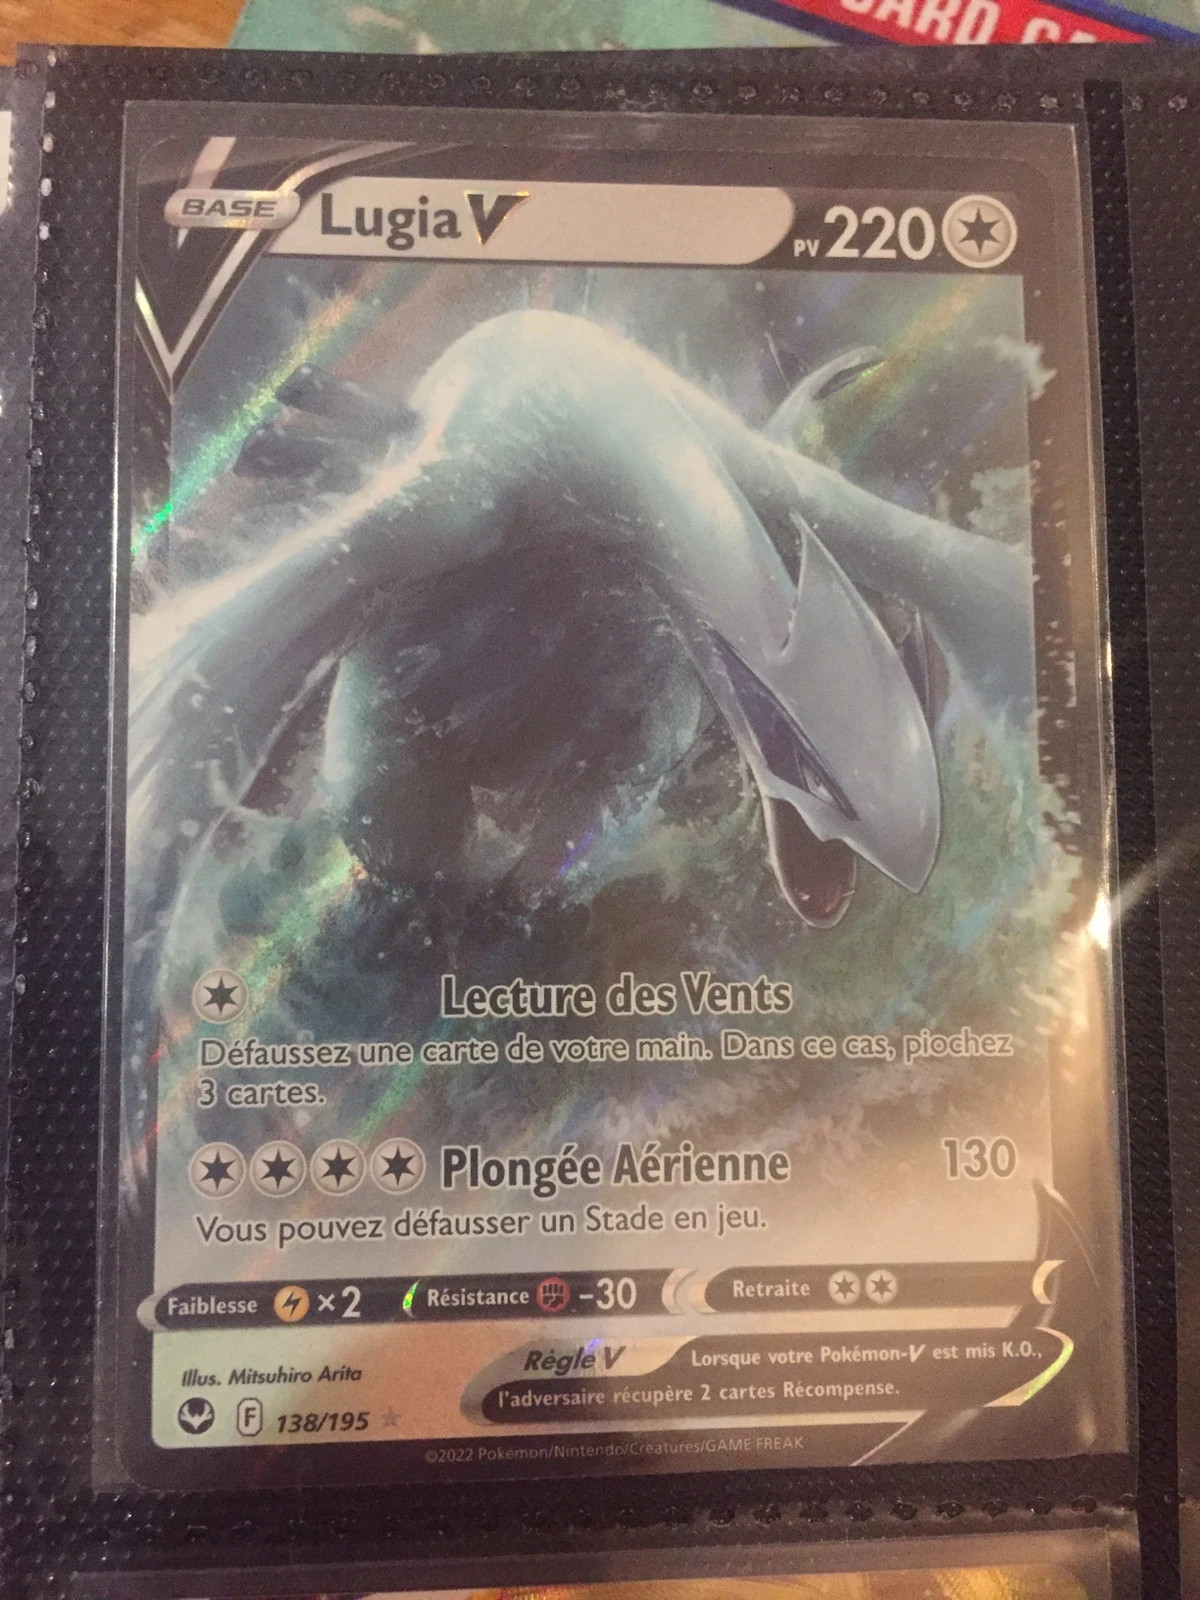 Vend carte Pokémon Lugia V (tempête argenté )